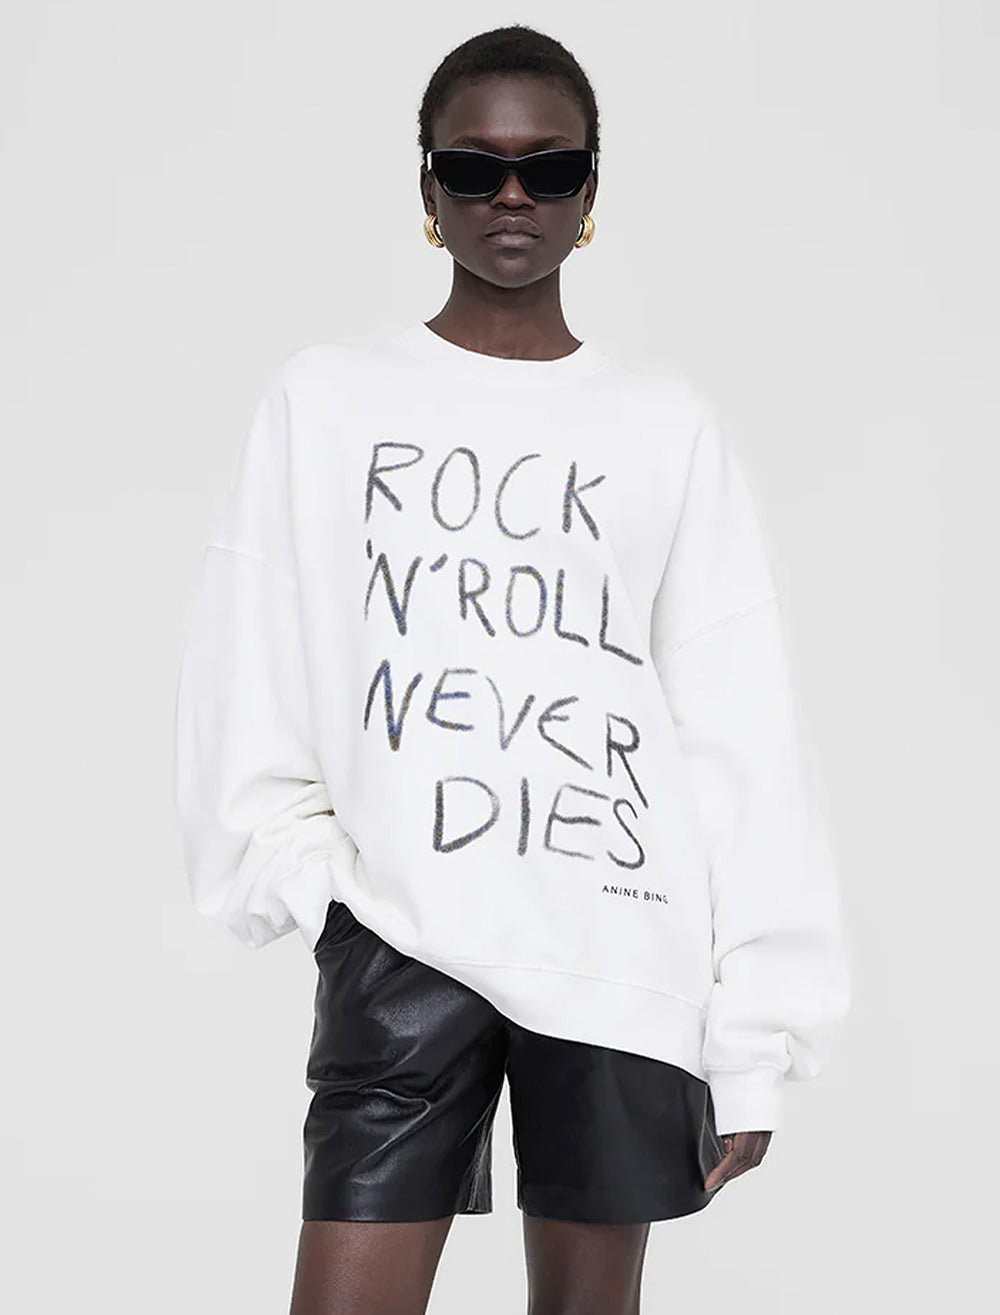 Model wearing Anine Bing's rock n roll never dies miles sweatshirt.